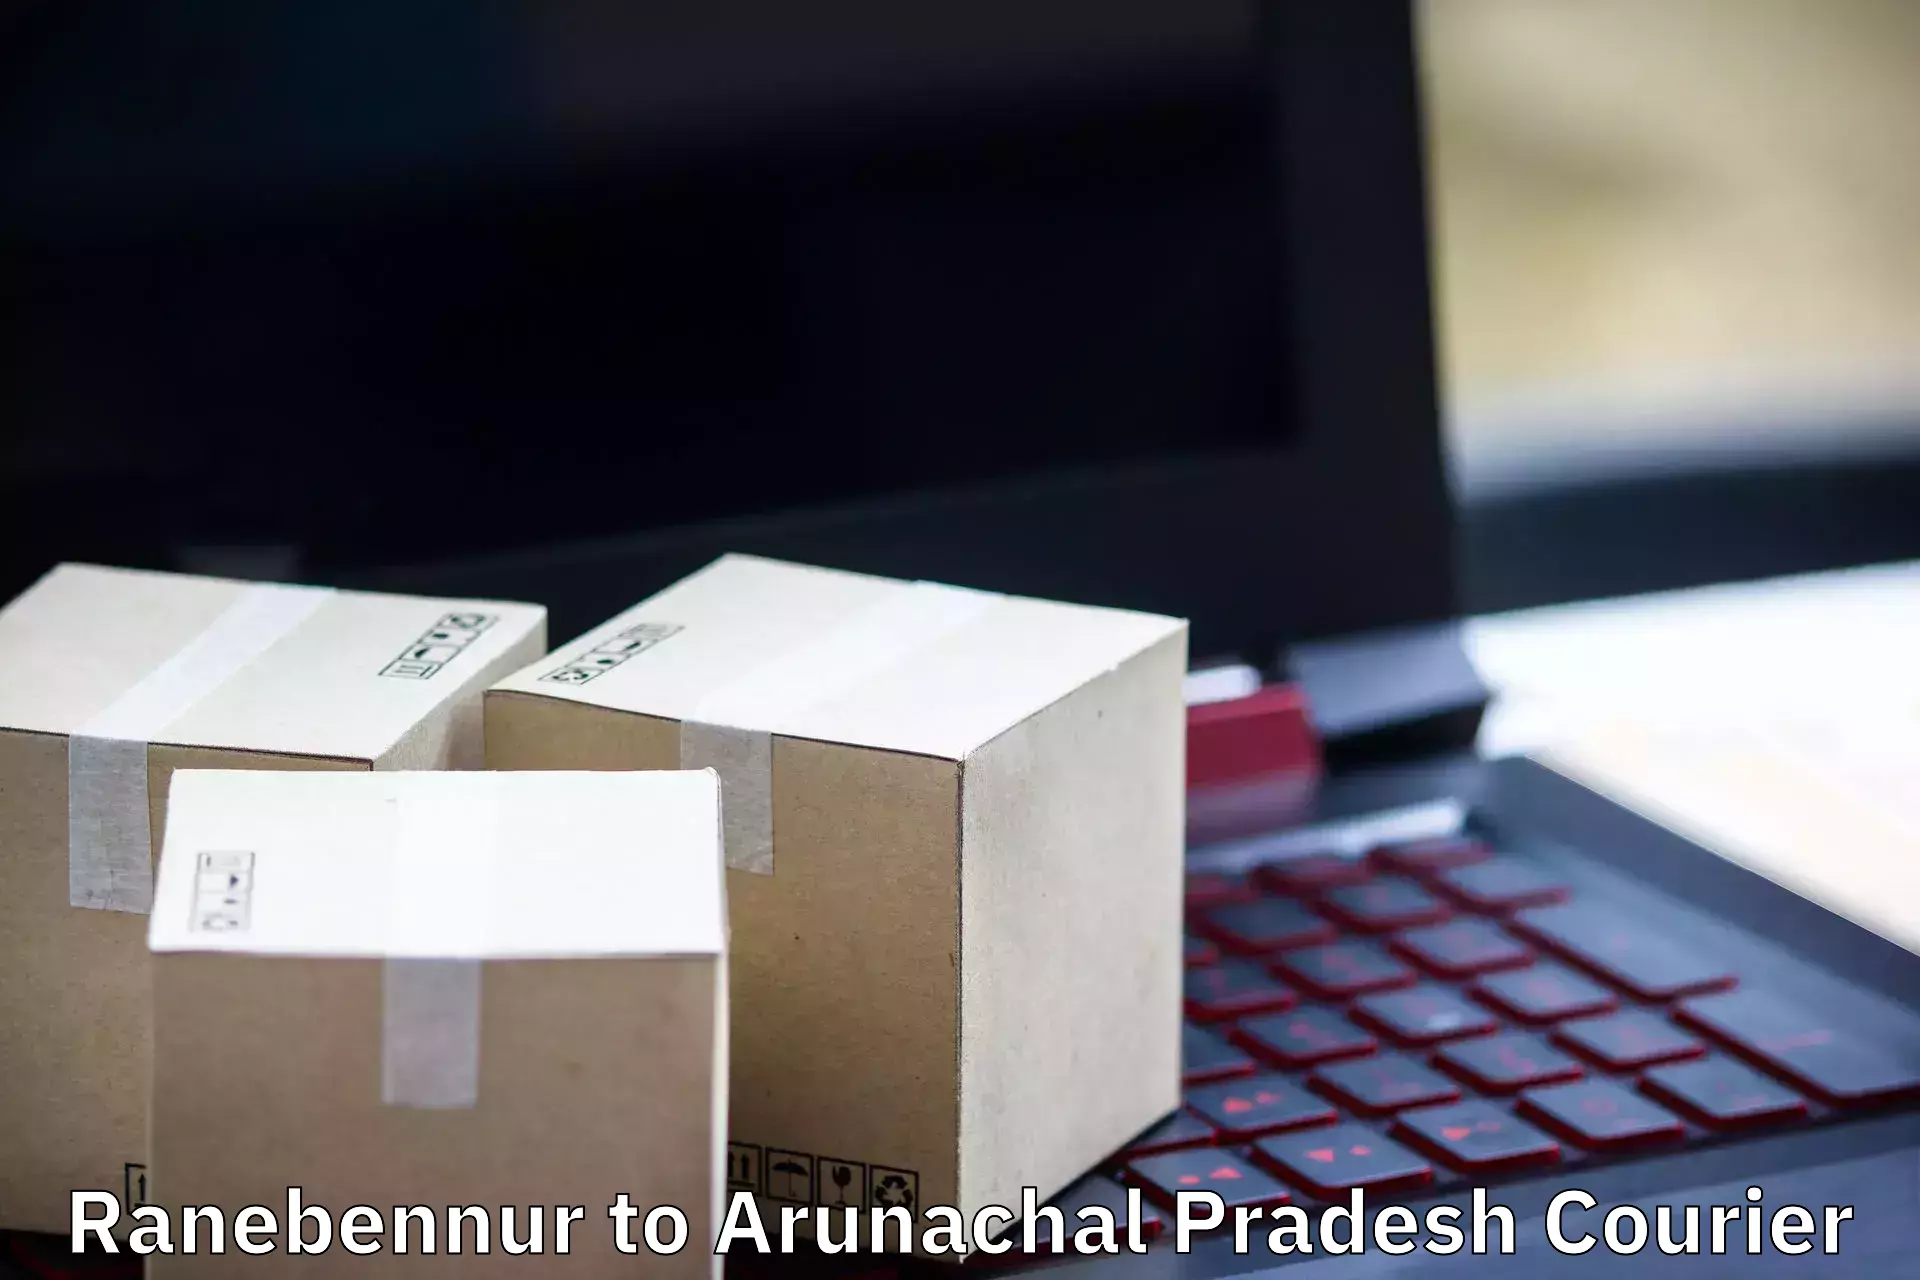 Furniture transport professionals Ranebennur to Arunachal Pradesh